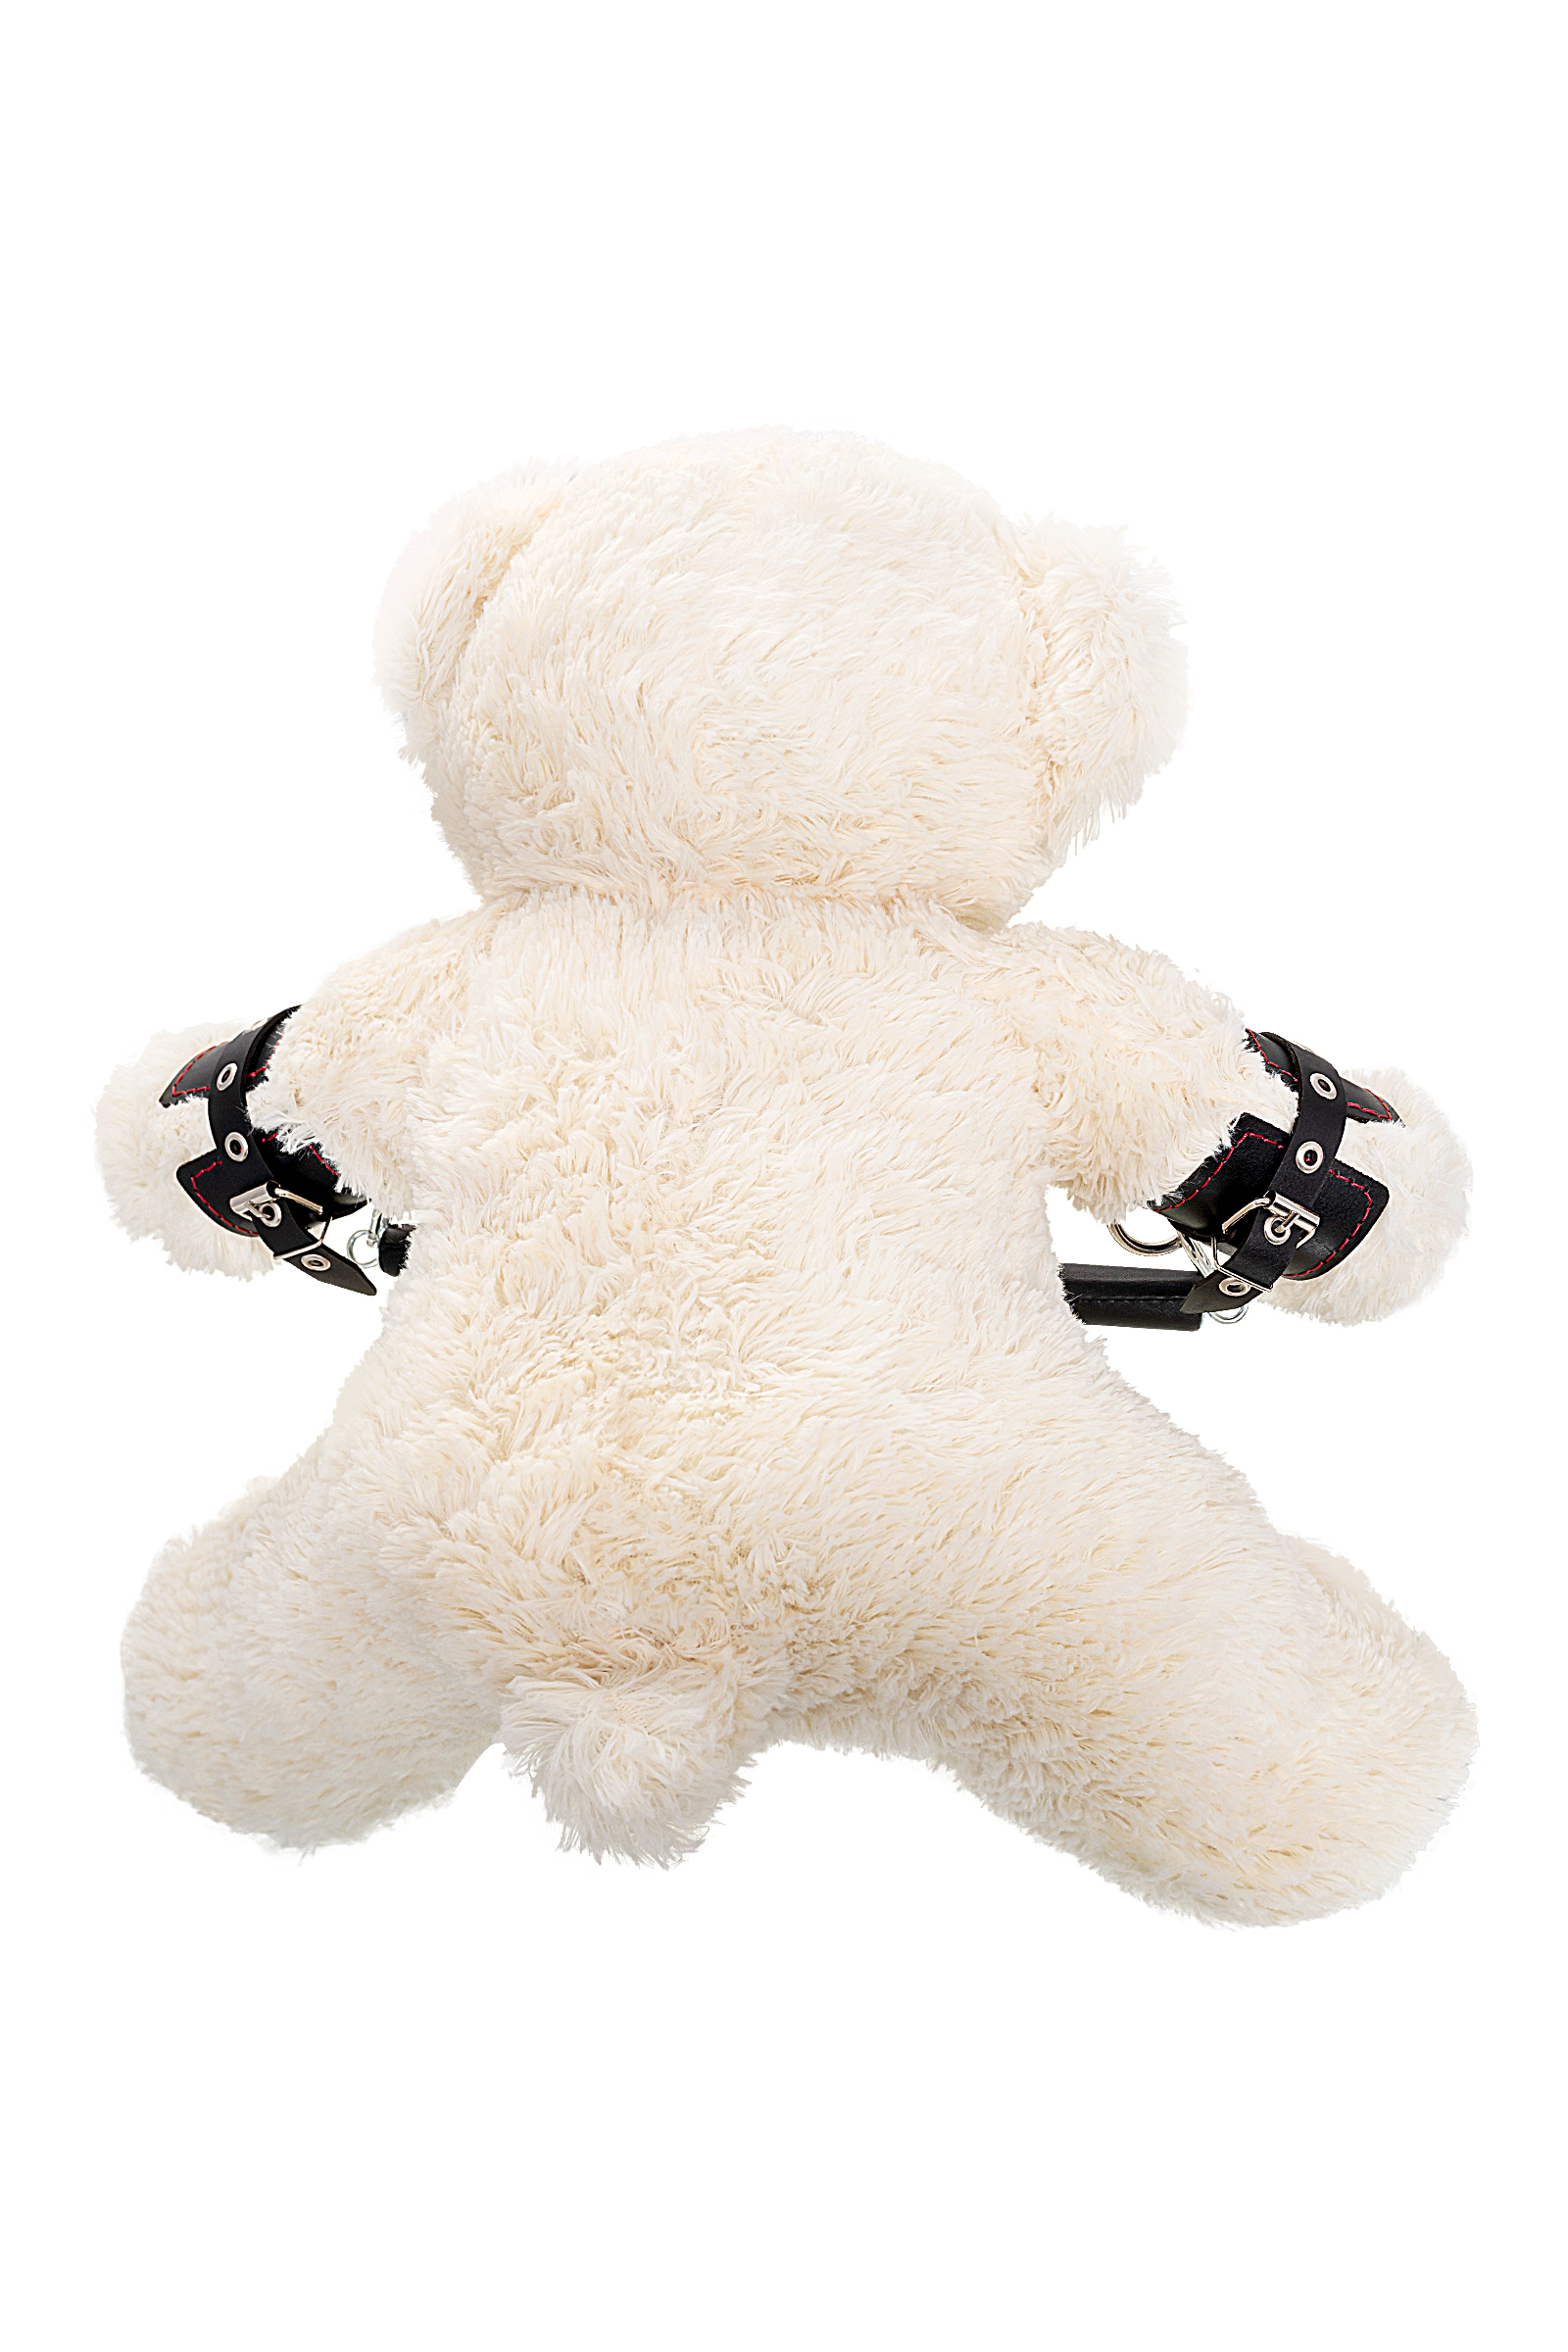 Бондажный кожаный набор Pecado BDSM Медведь белый черный